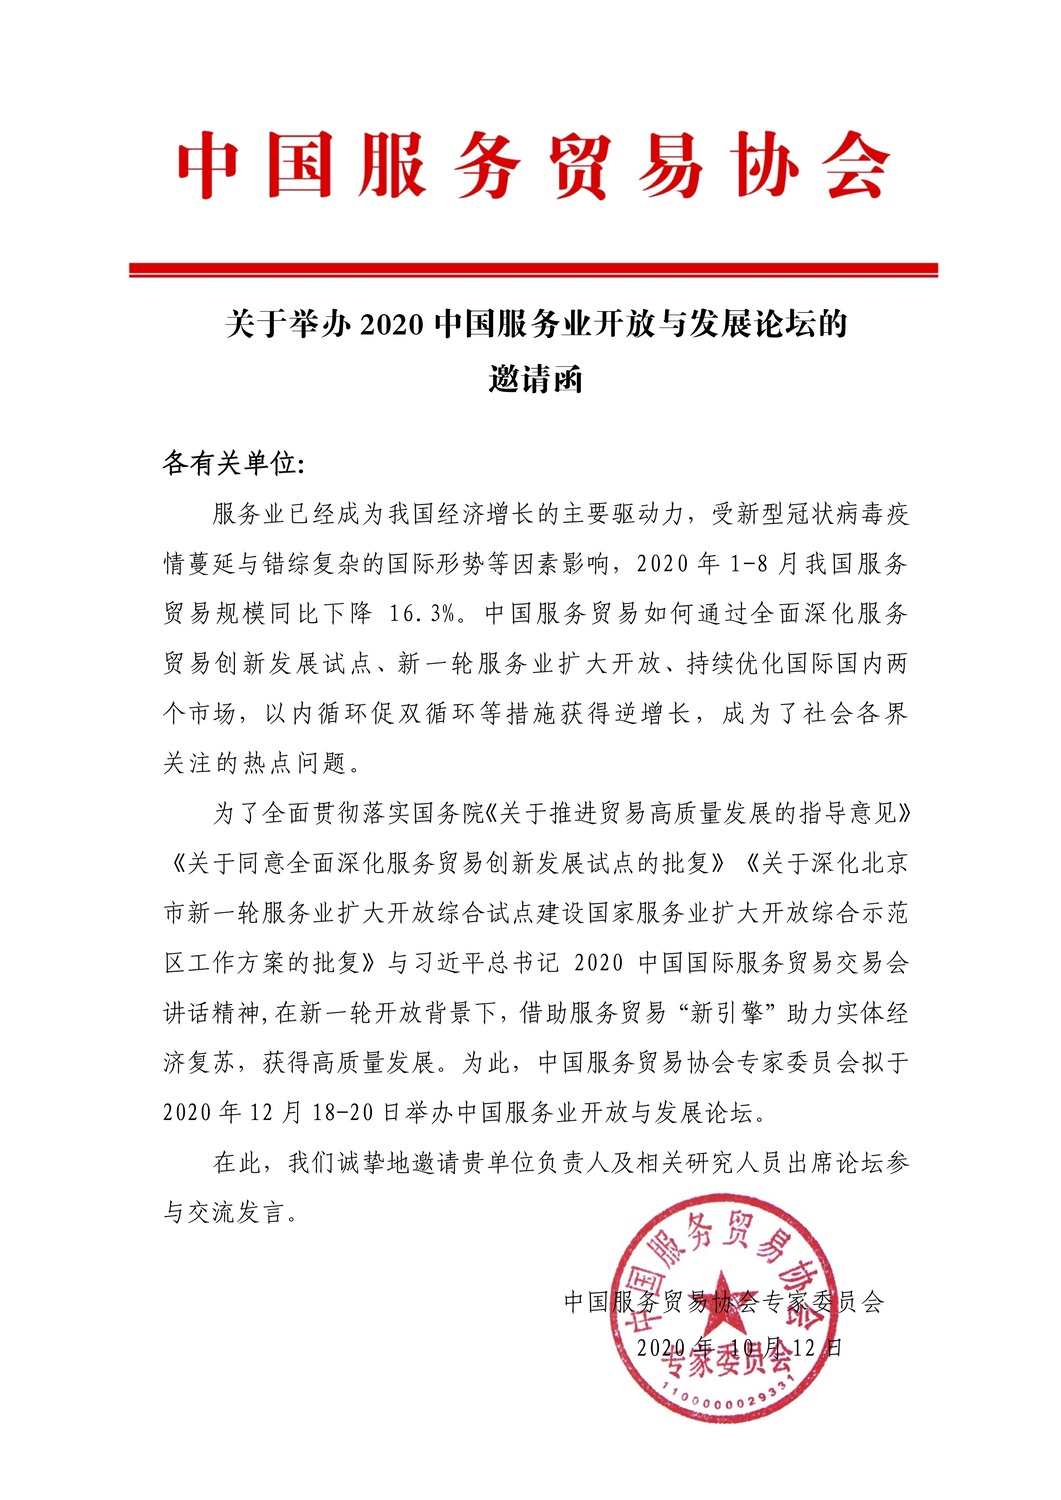 (原)2020中国服务业开放与发展论坛邀请函.jpg